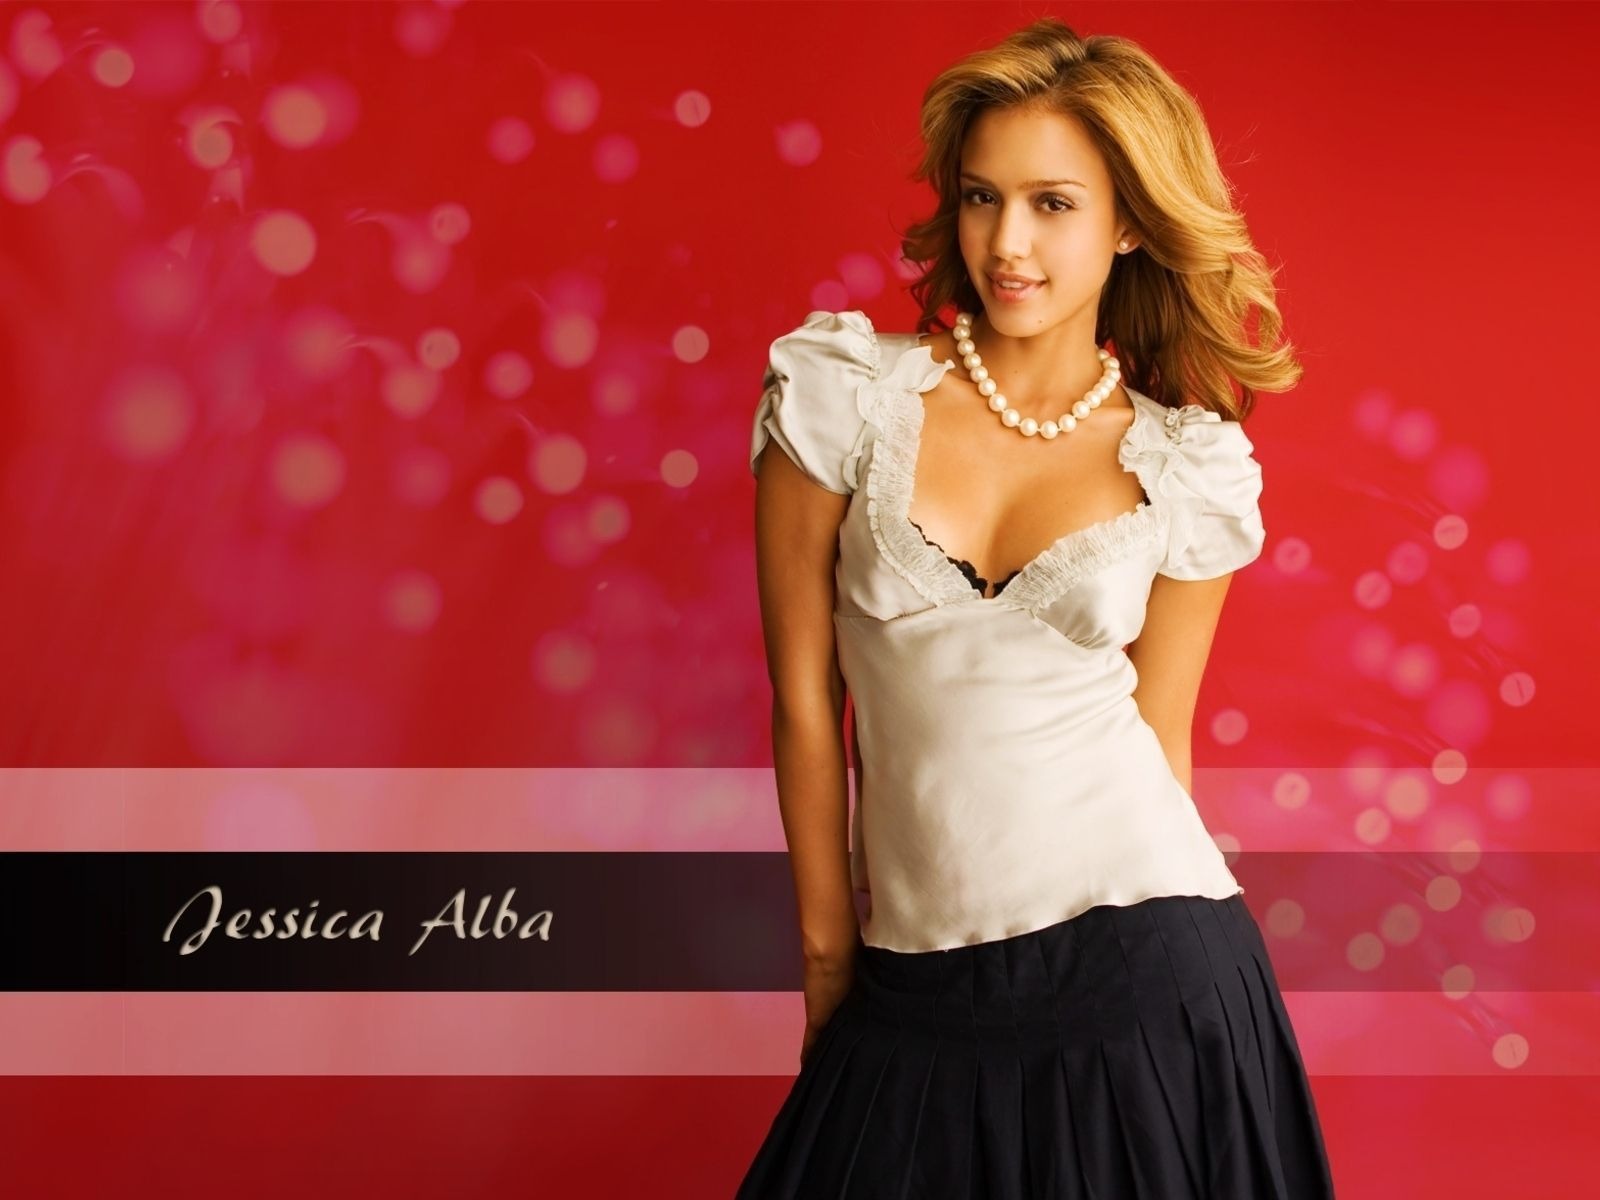 Jessica Alba beautiful wallpaper (8) #18 - 1600x1200